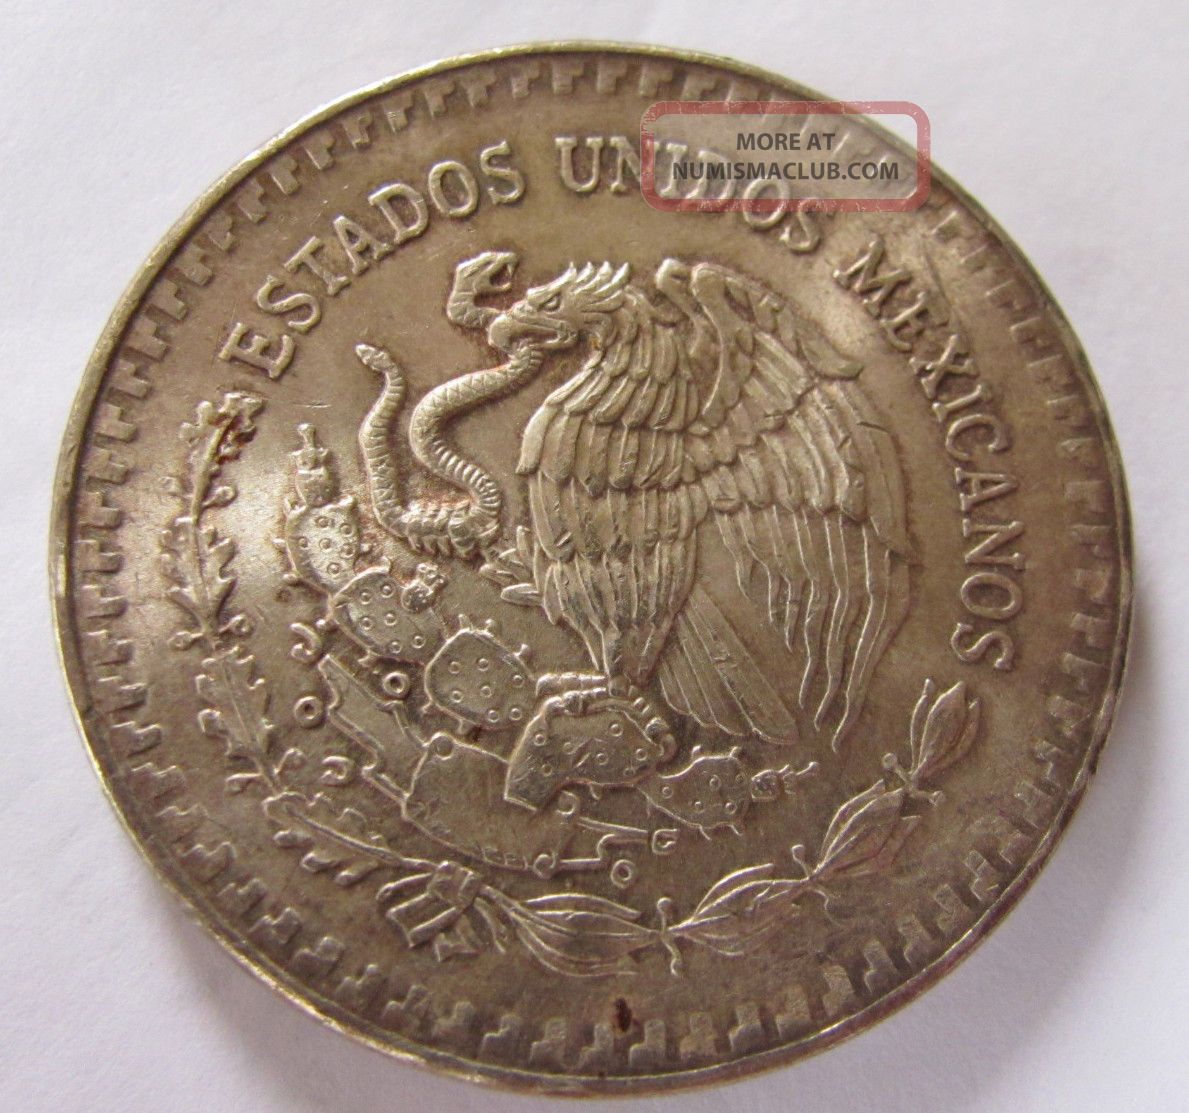 1984 mexican dollar coin